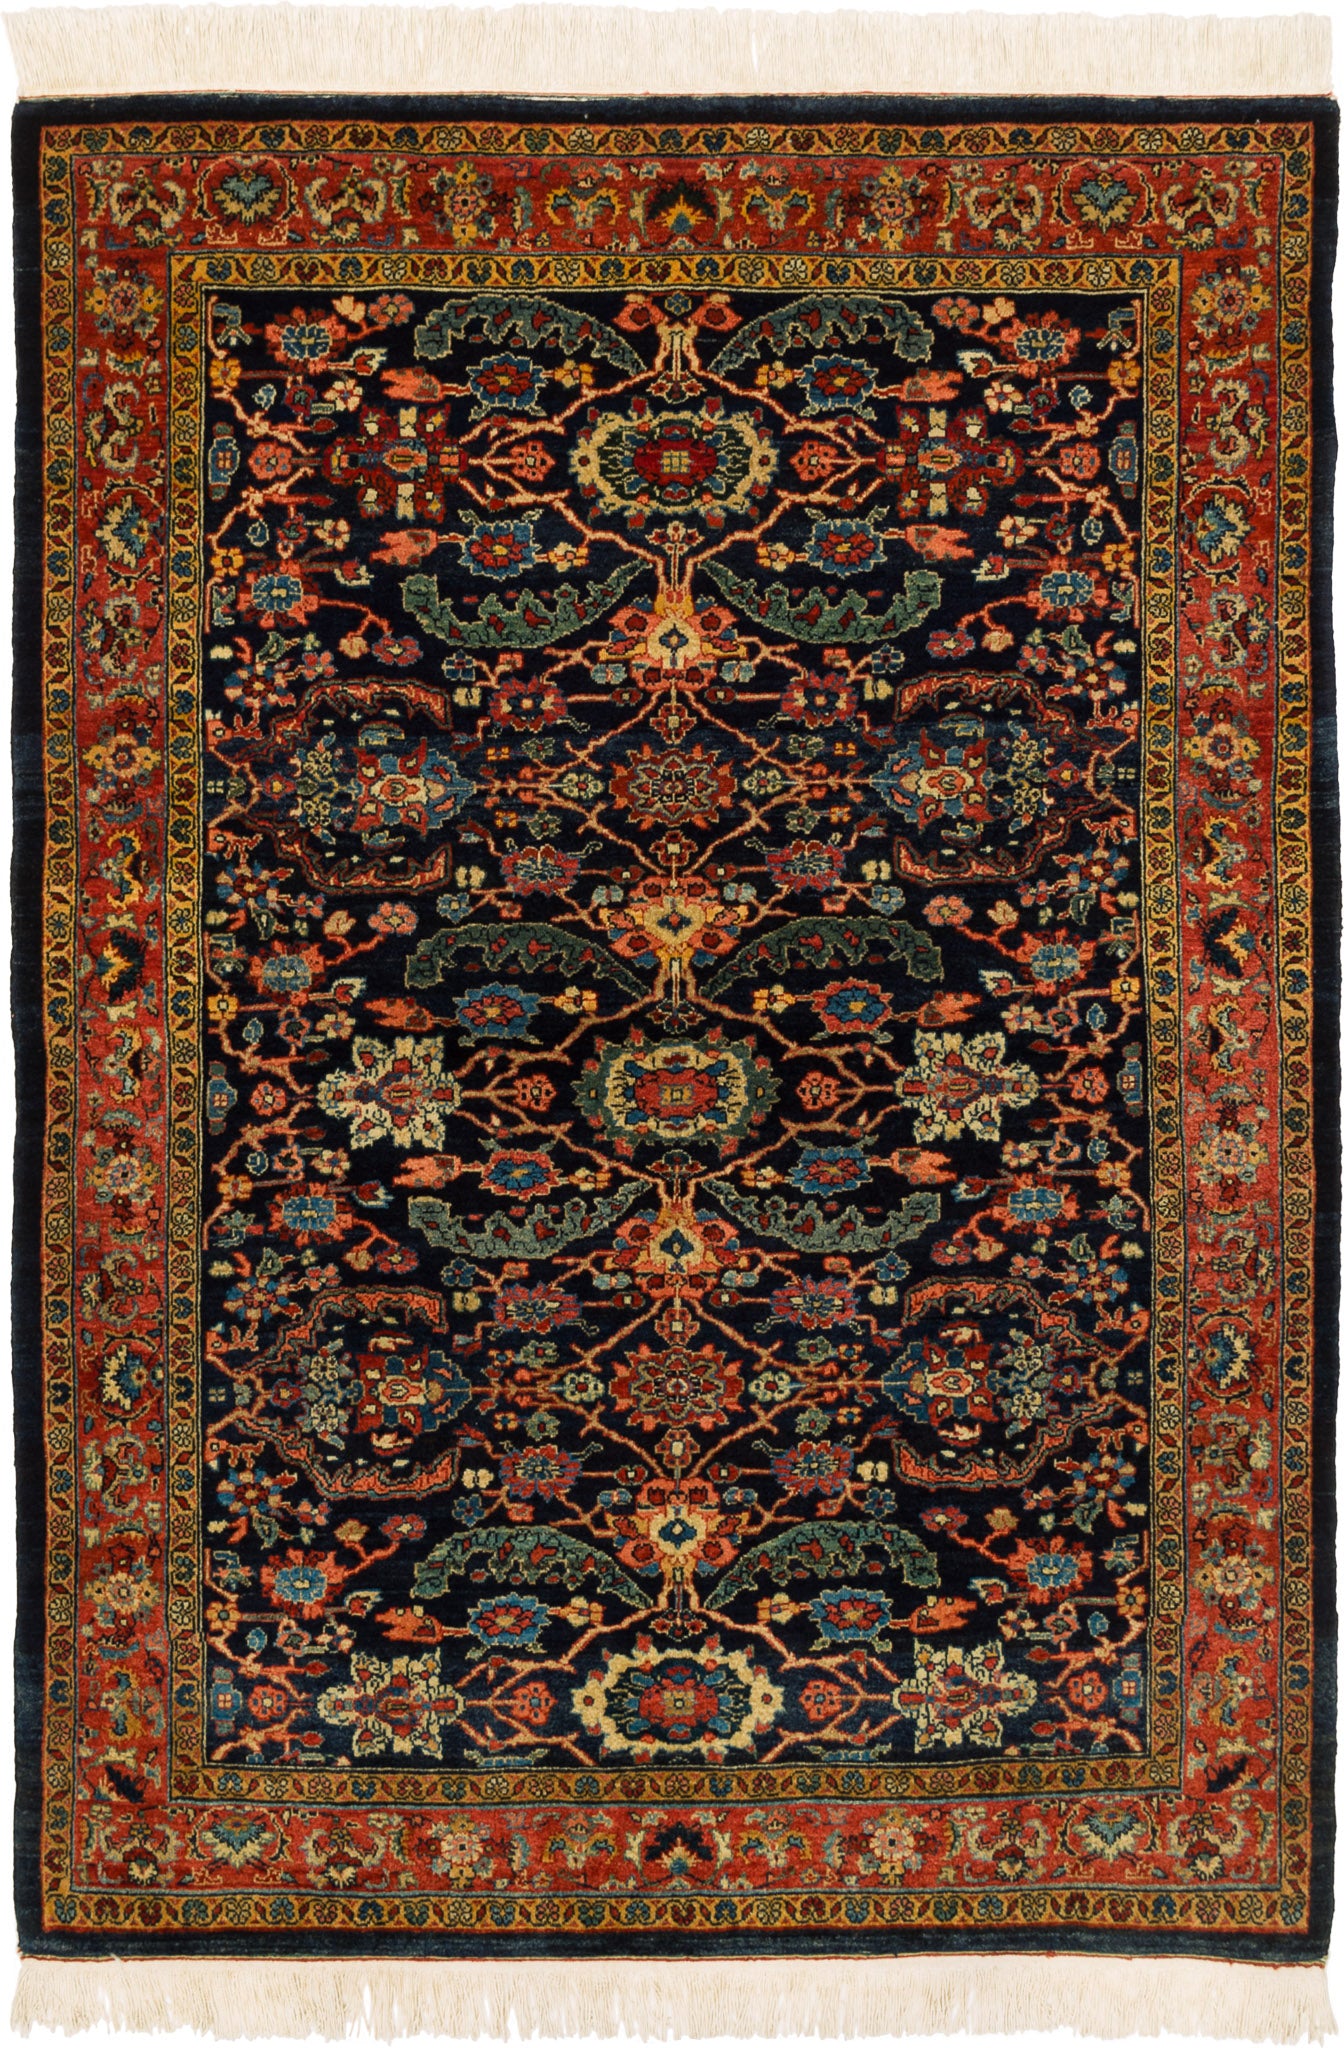 Bidjar Mirzai, 174 × 126 cm